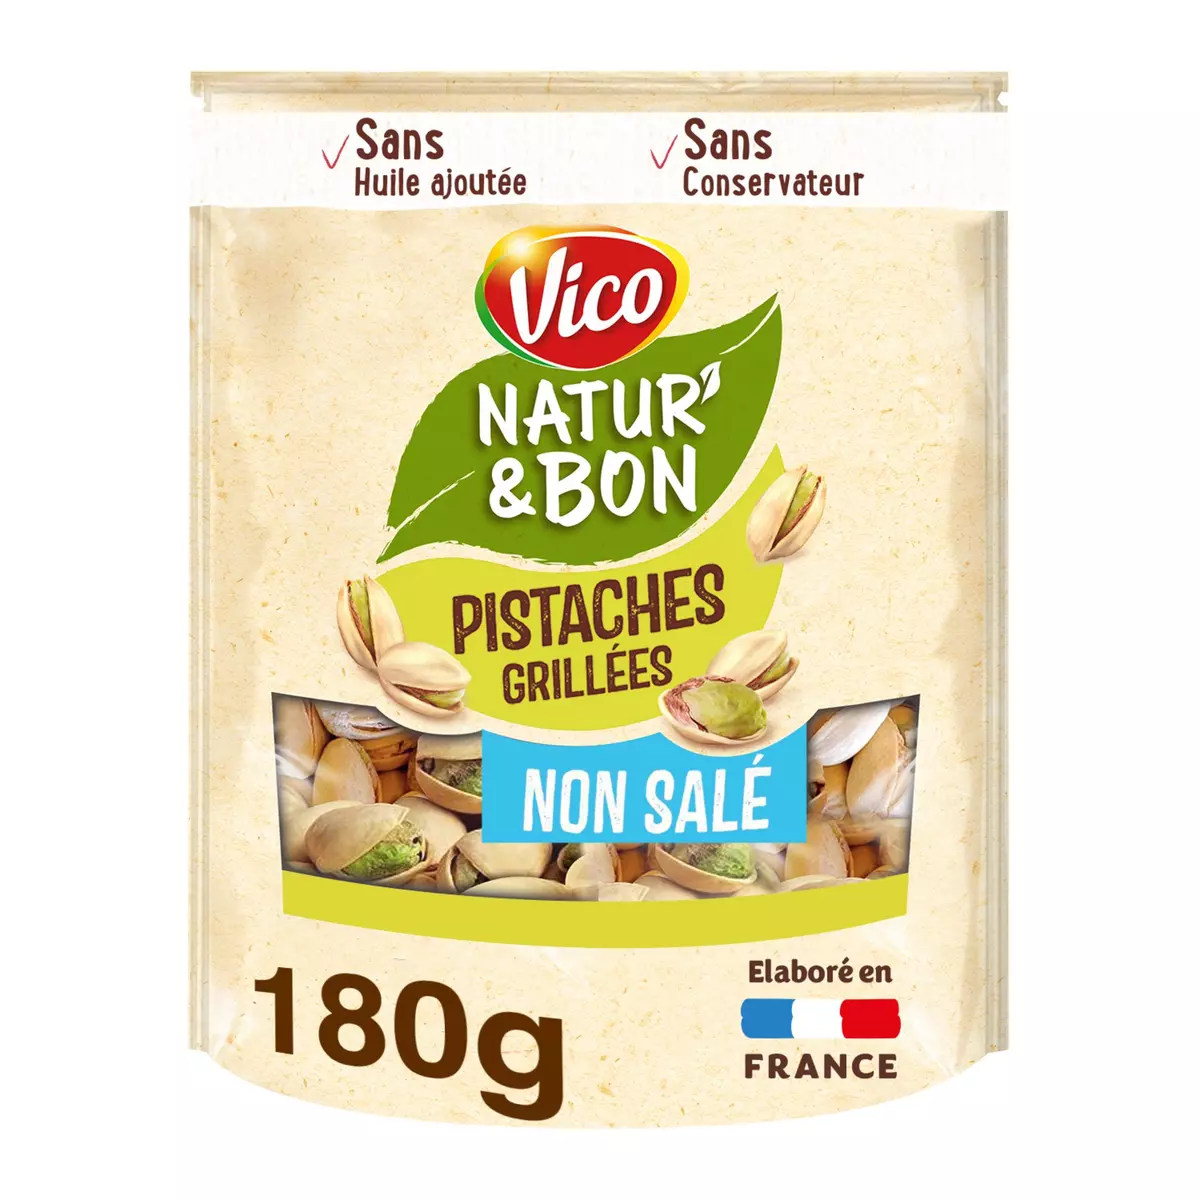 VICO Pistaches grillées non salées Natur'& Bon 180g